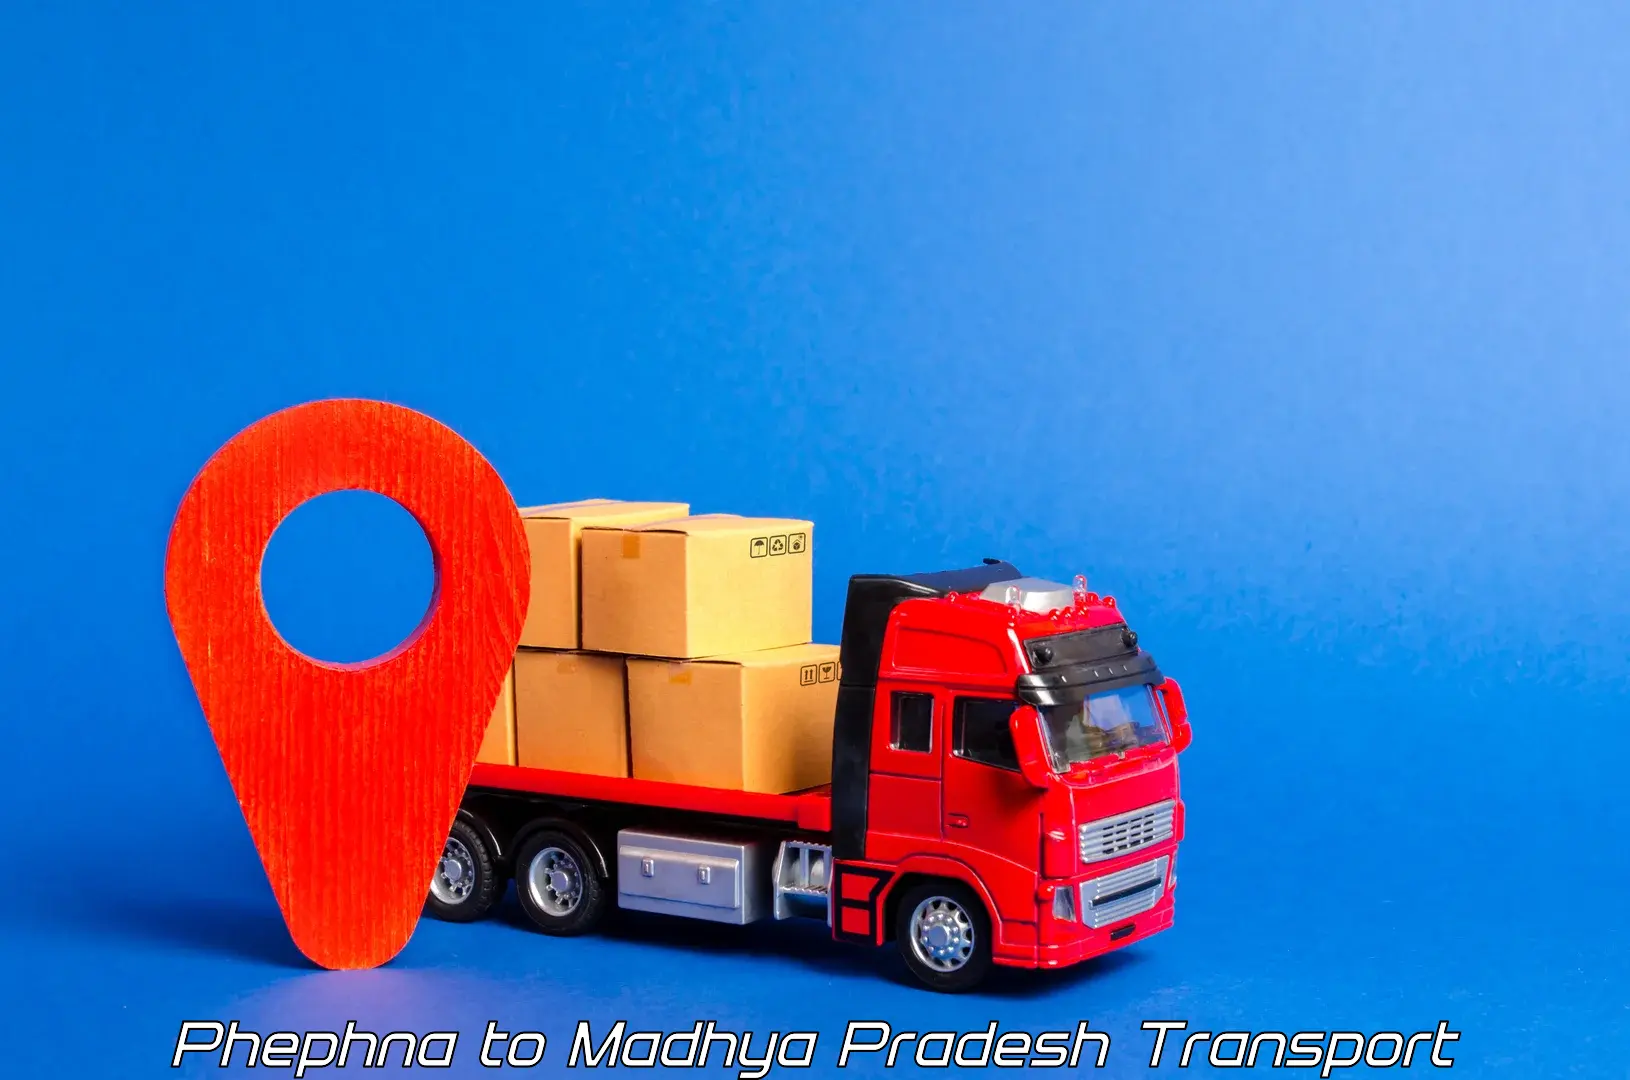 Interstate goods transport Phephna to Nalkheda